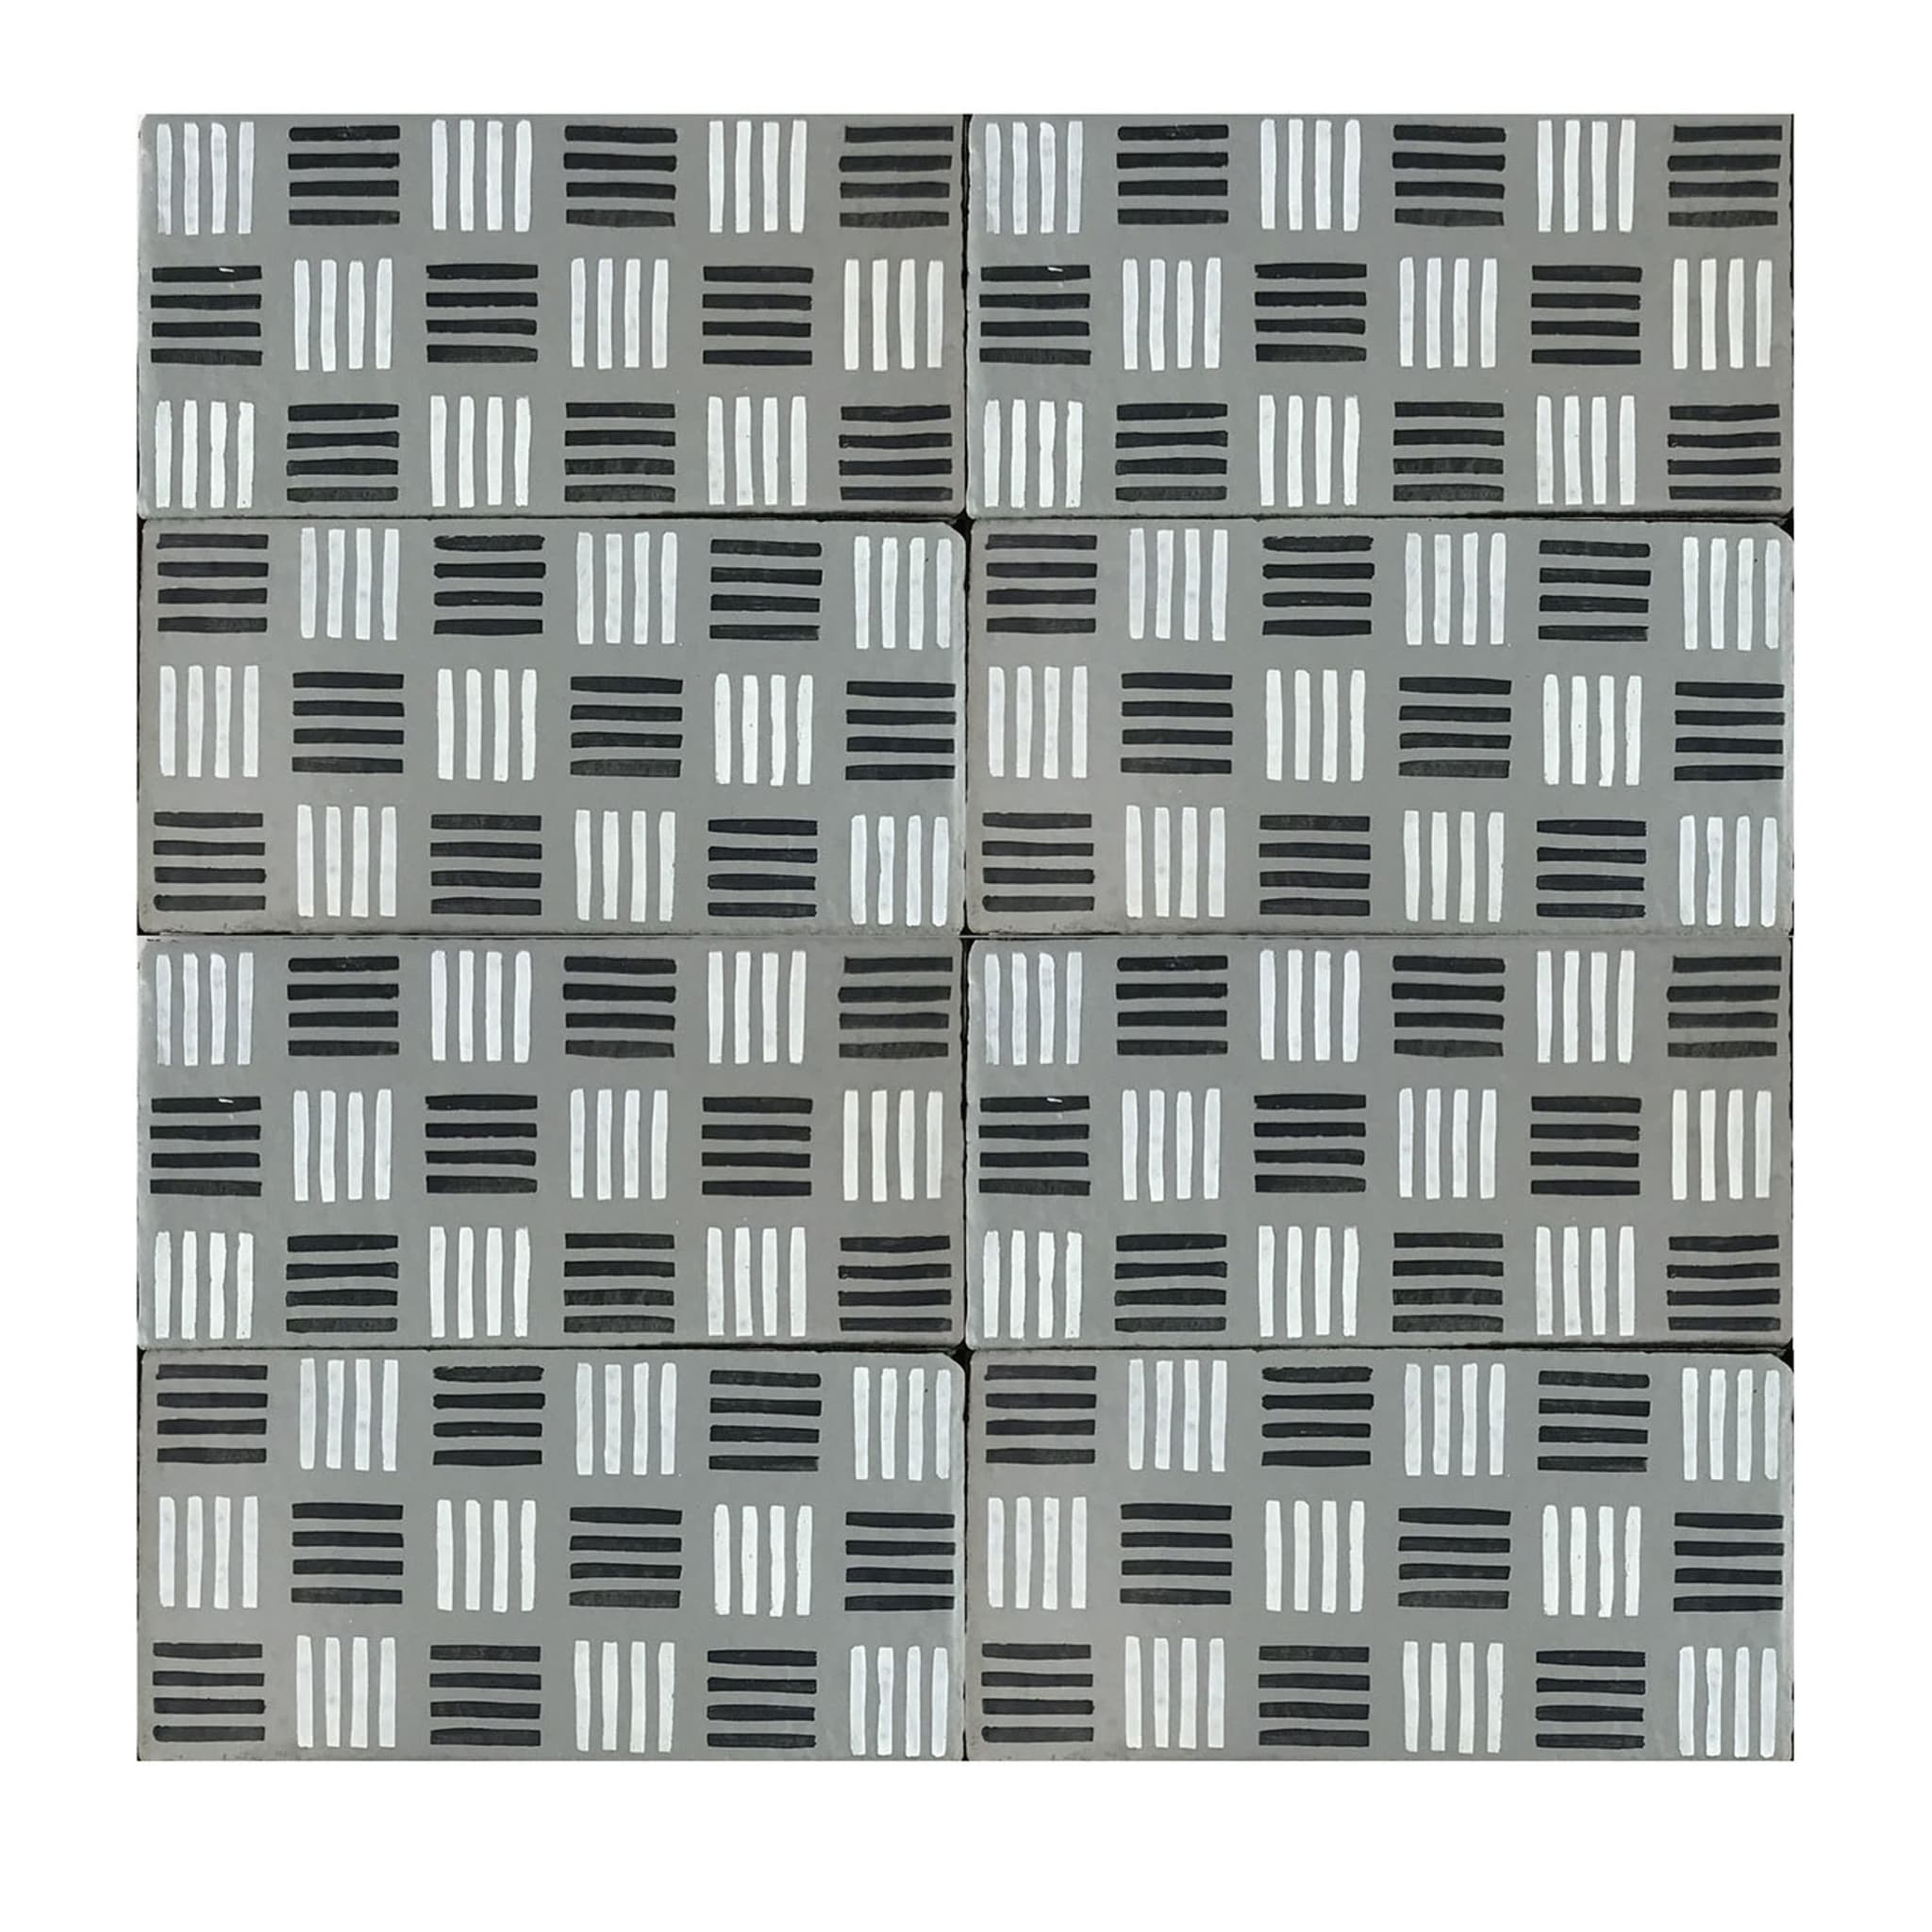 Daamè Lot de 50 carreaux rectangulaires gris #2 - Vue principale